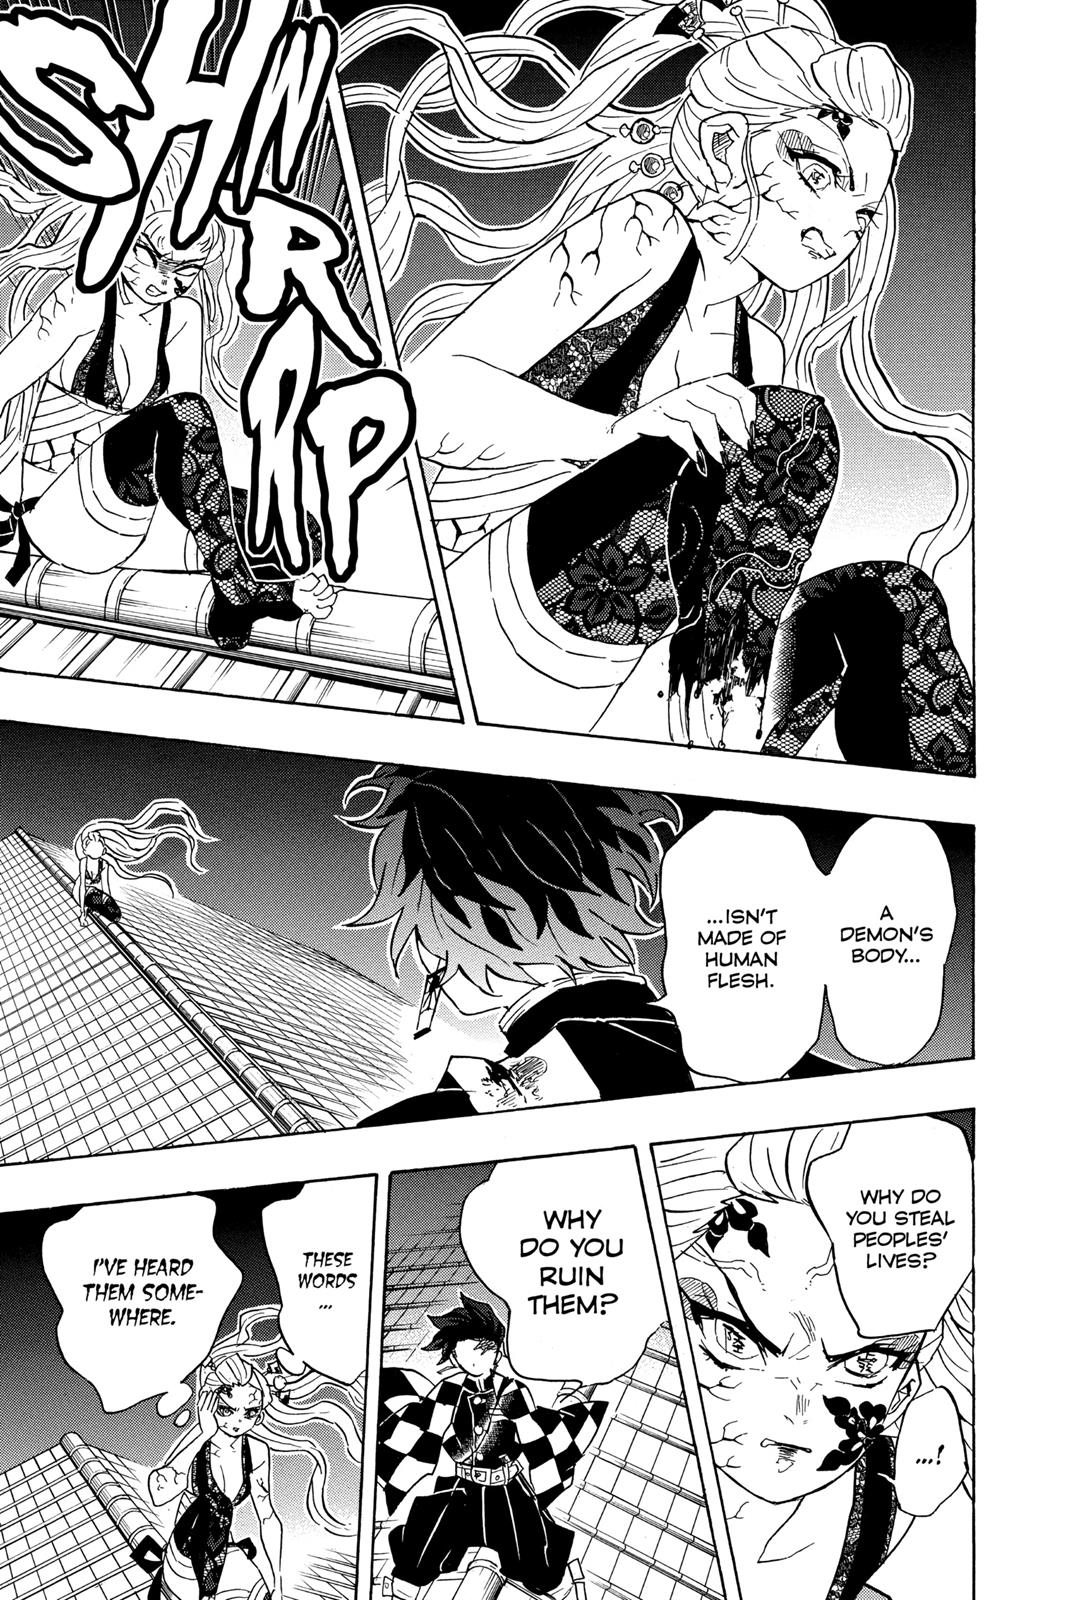 Demon Slayer Manga Manga Chapter - 81 - image 9